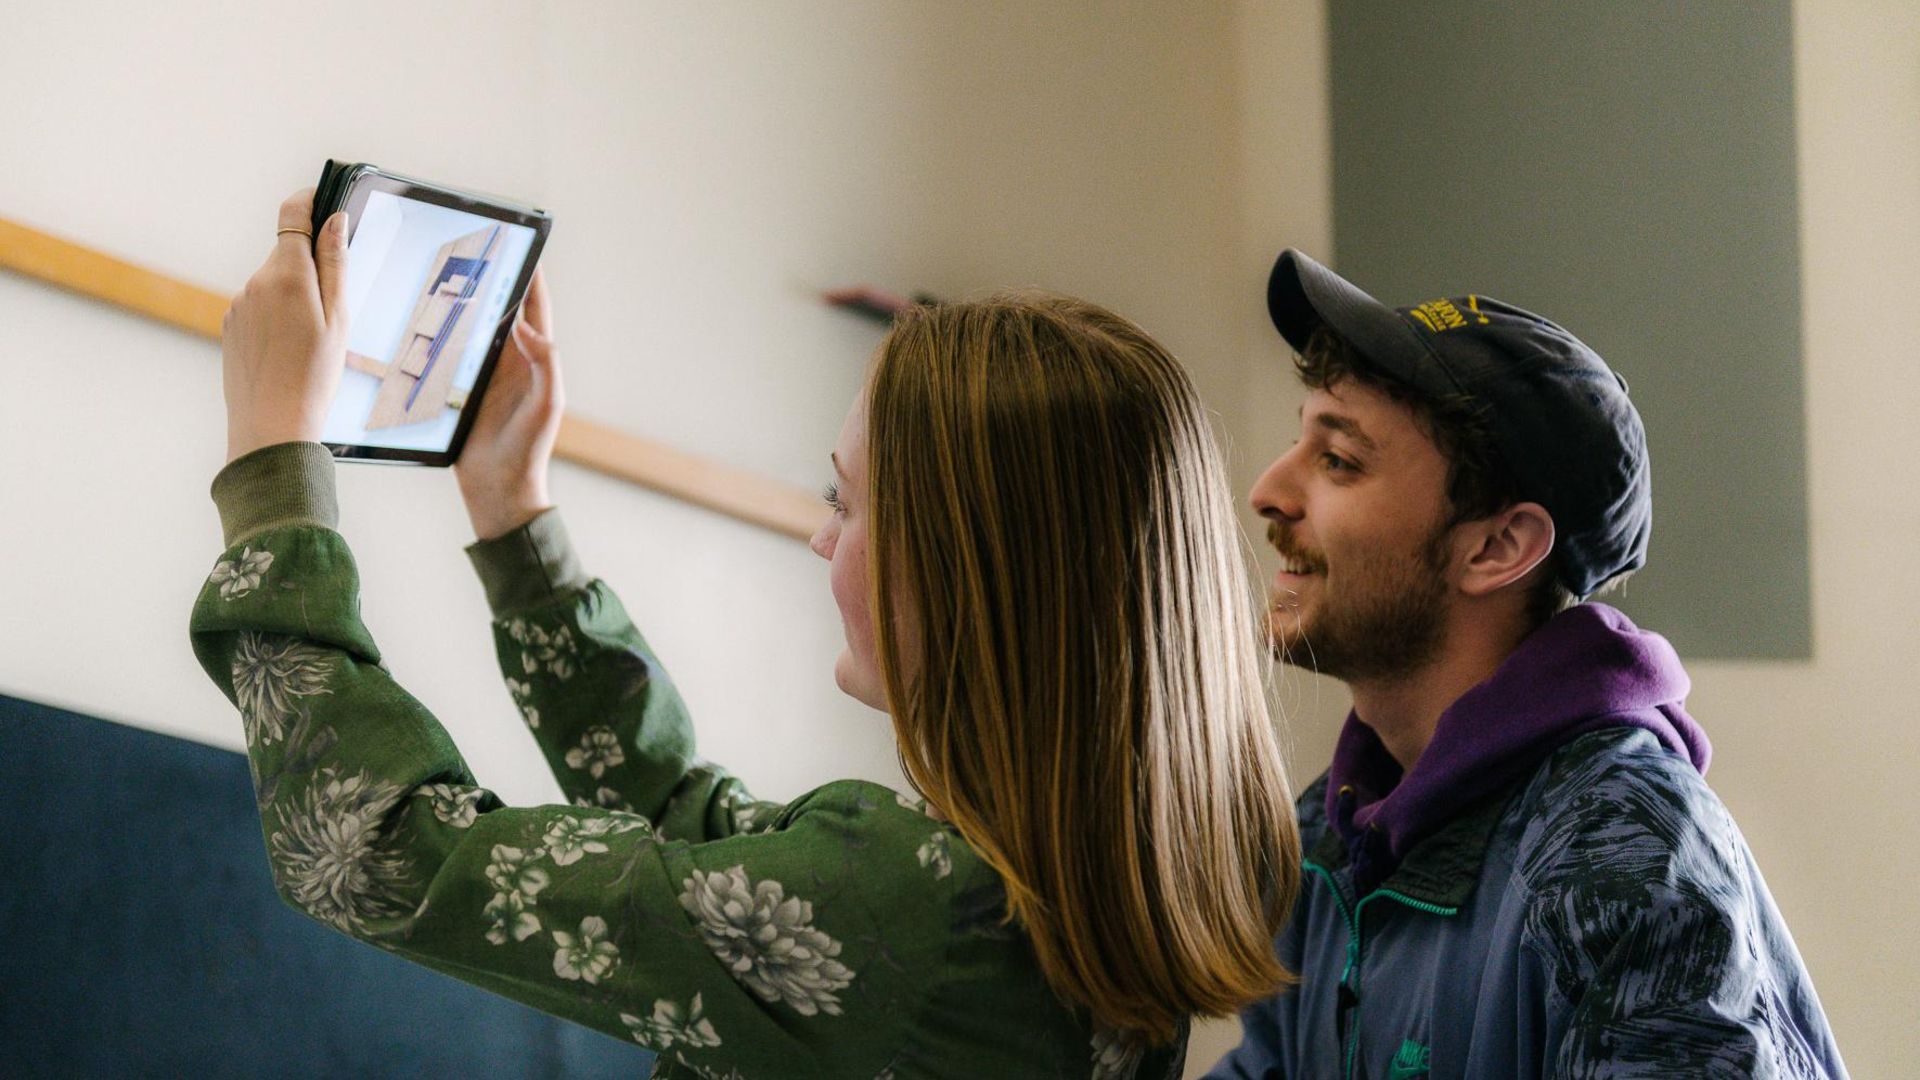 Foto: Zwei junge Besucher:innen halten ein Tablet. Es zeigt die Aufnahme eines Fotos von einem Kunstwerk.